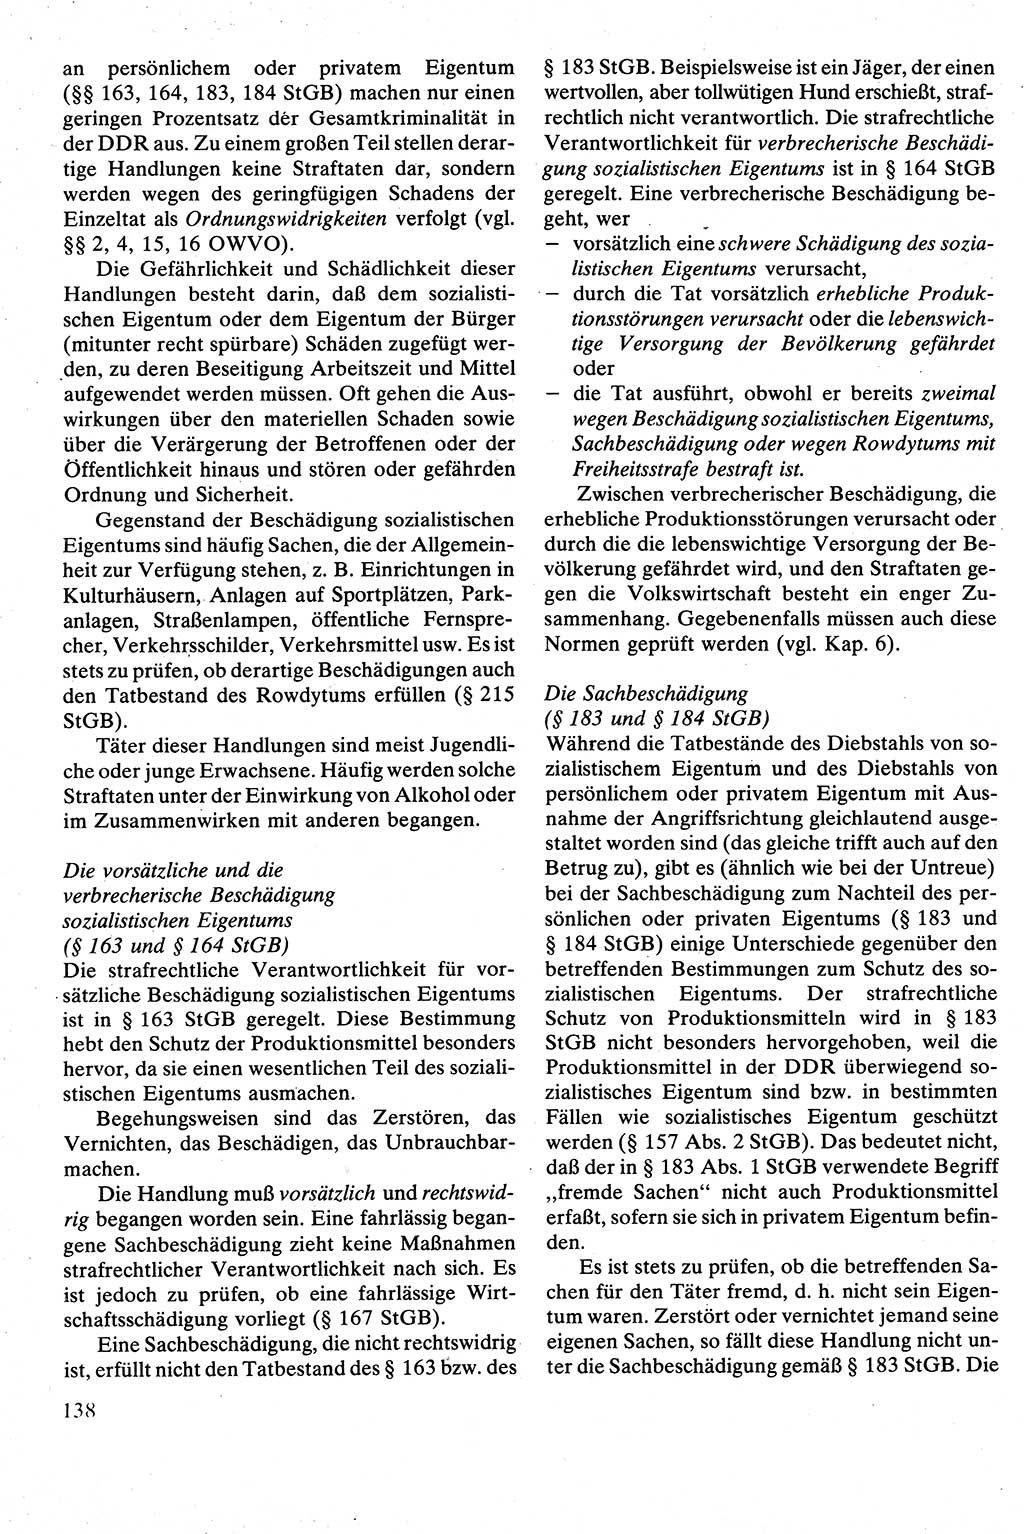 Strafrecht [Deutsche Demokratische Republik (DDR)], Besonderer Teil, Lehrbuch 1981, Seite 138 (Strafr. DDR BT Lb. 1981, S. 138)